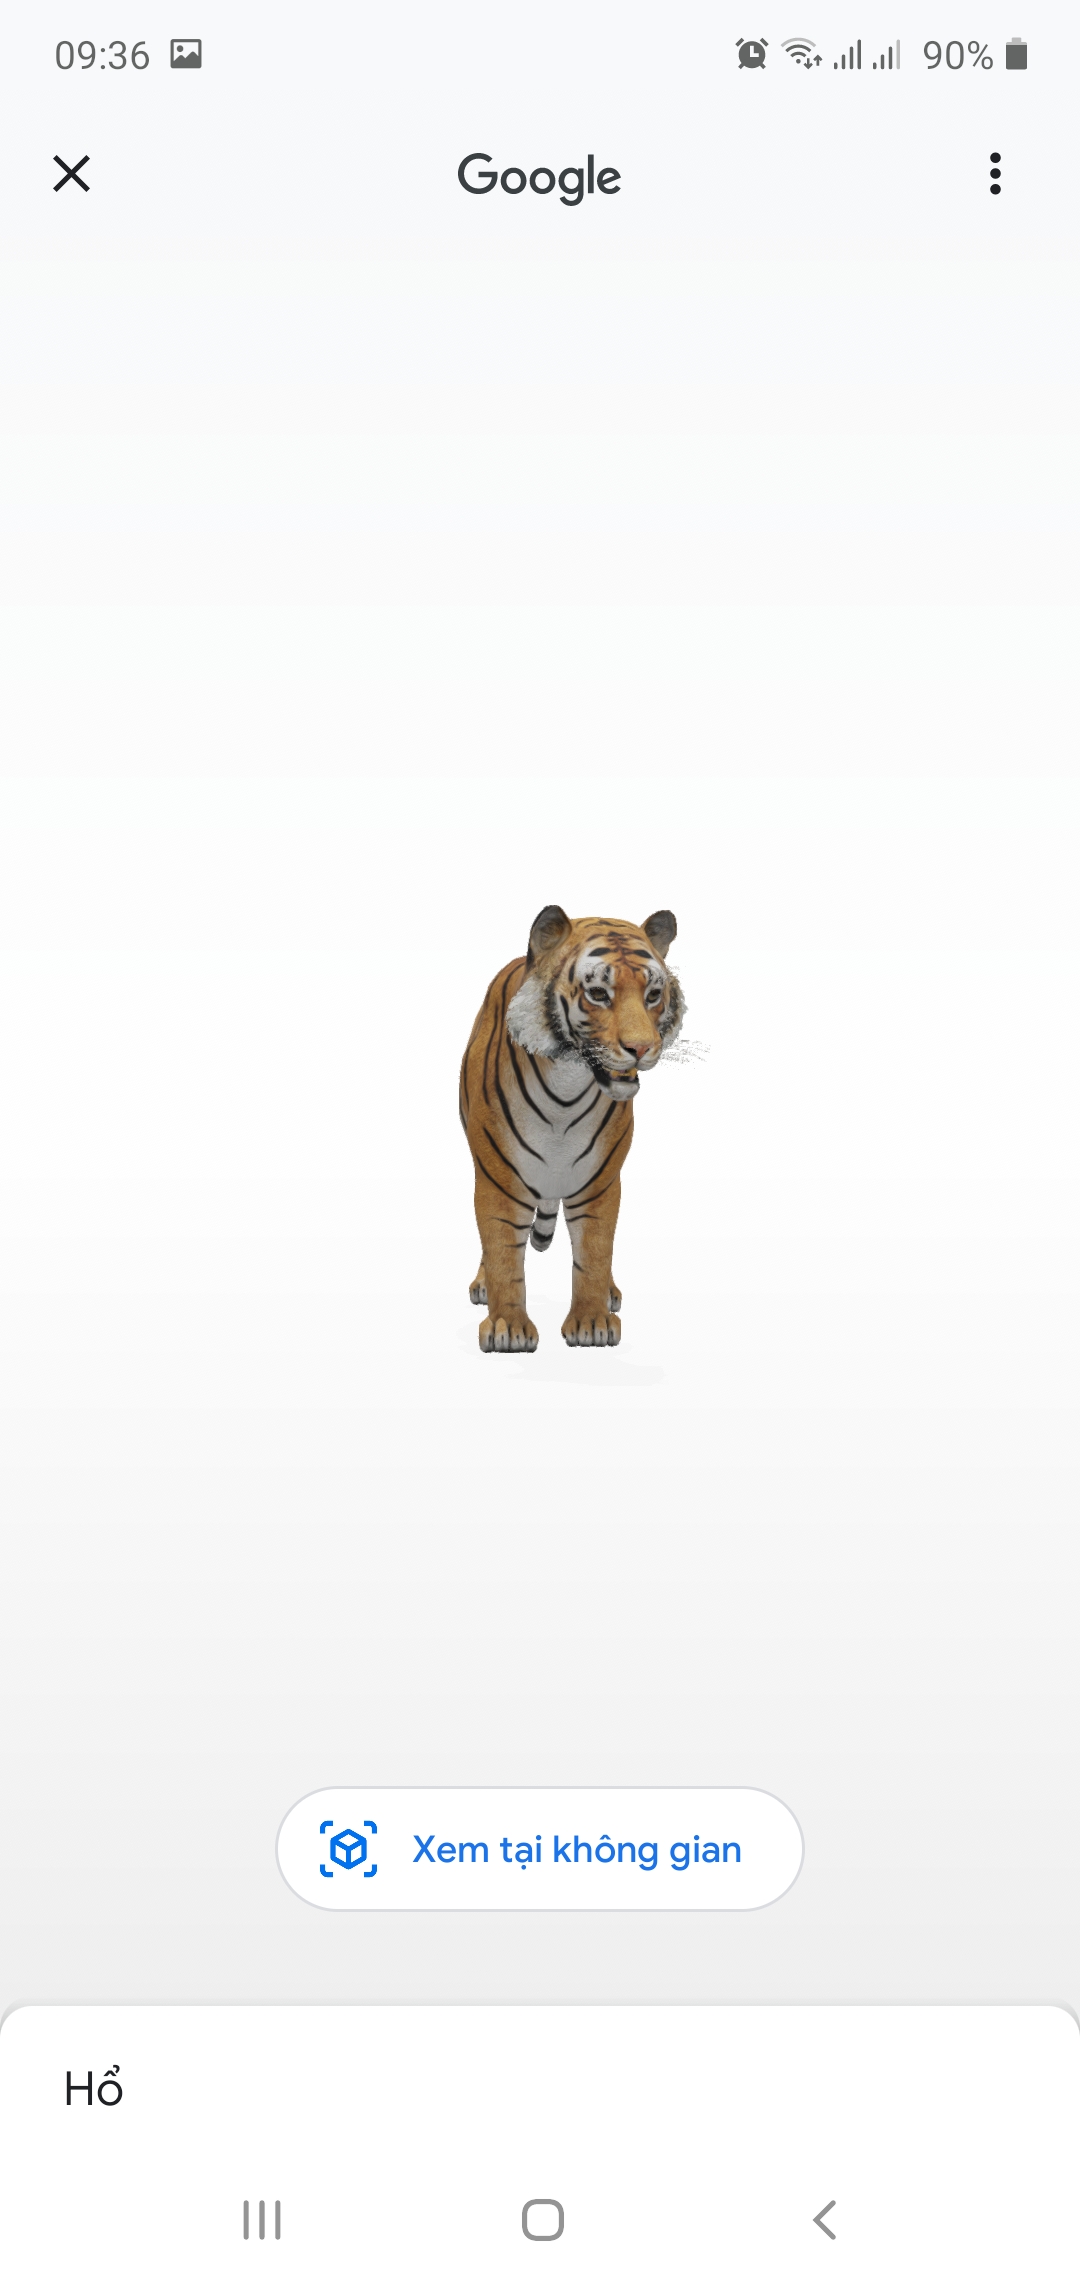 Google 3D animals - Google chính thức ra mắt tính năng xem 3D thực tế ảo.